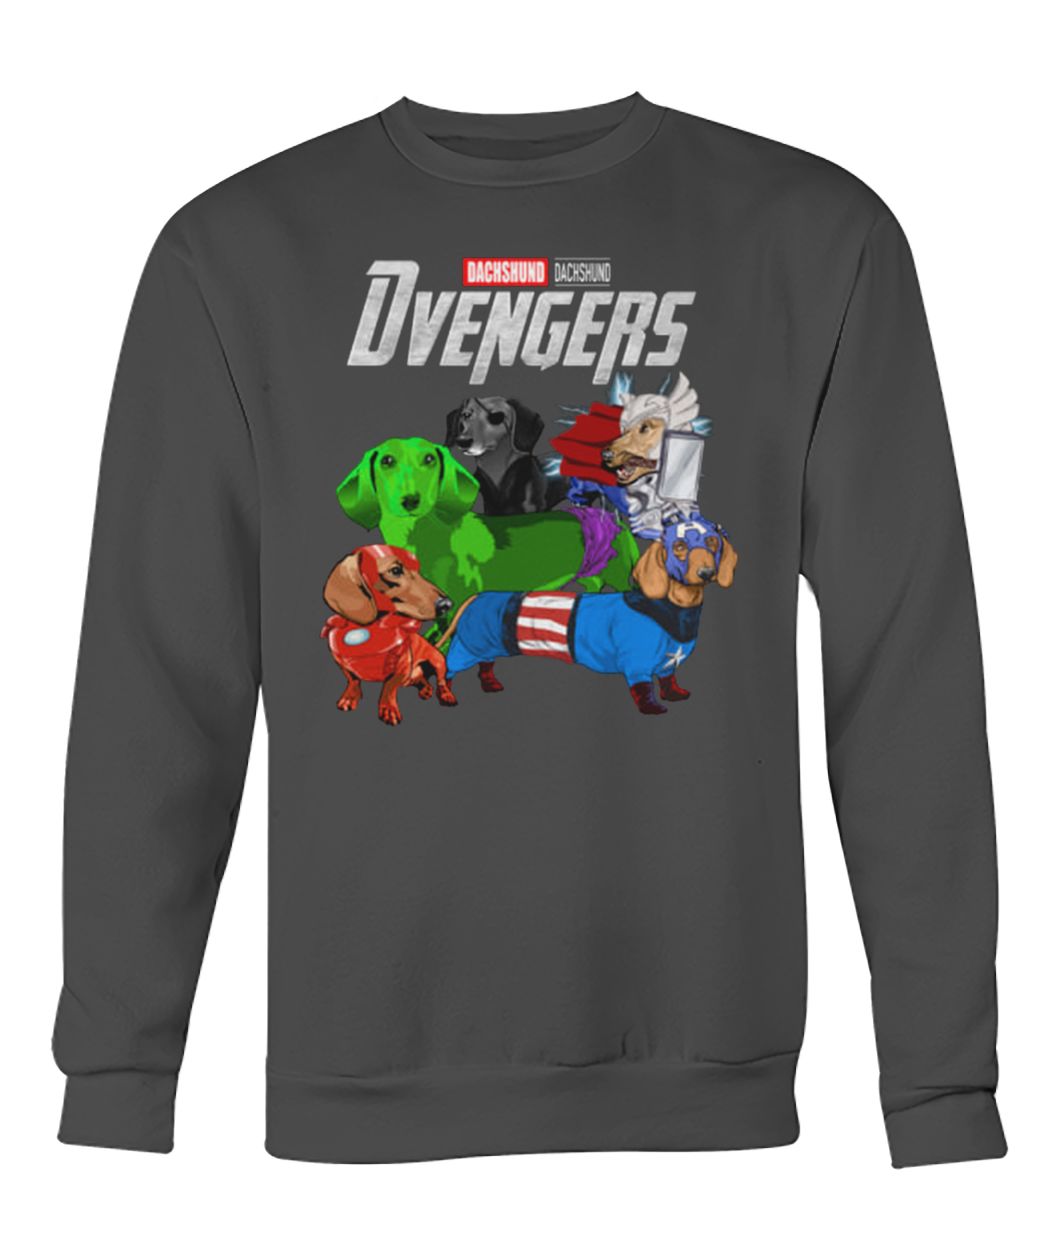 Marvel avengers endgame Dvengers dachshund crew neck sweatshirt